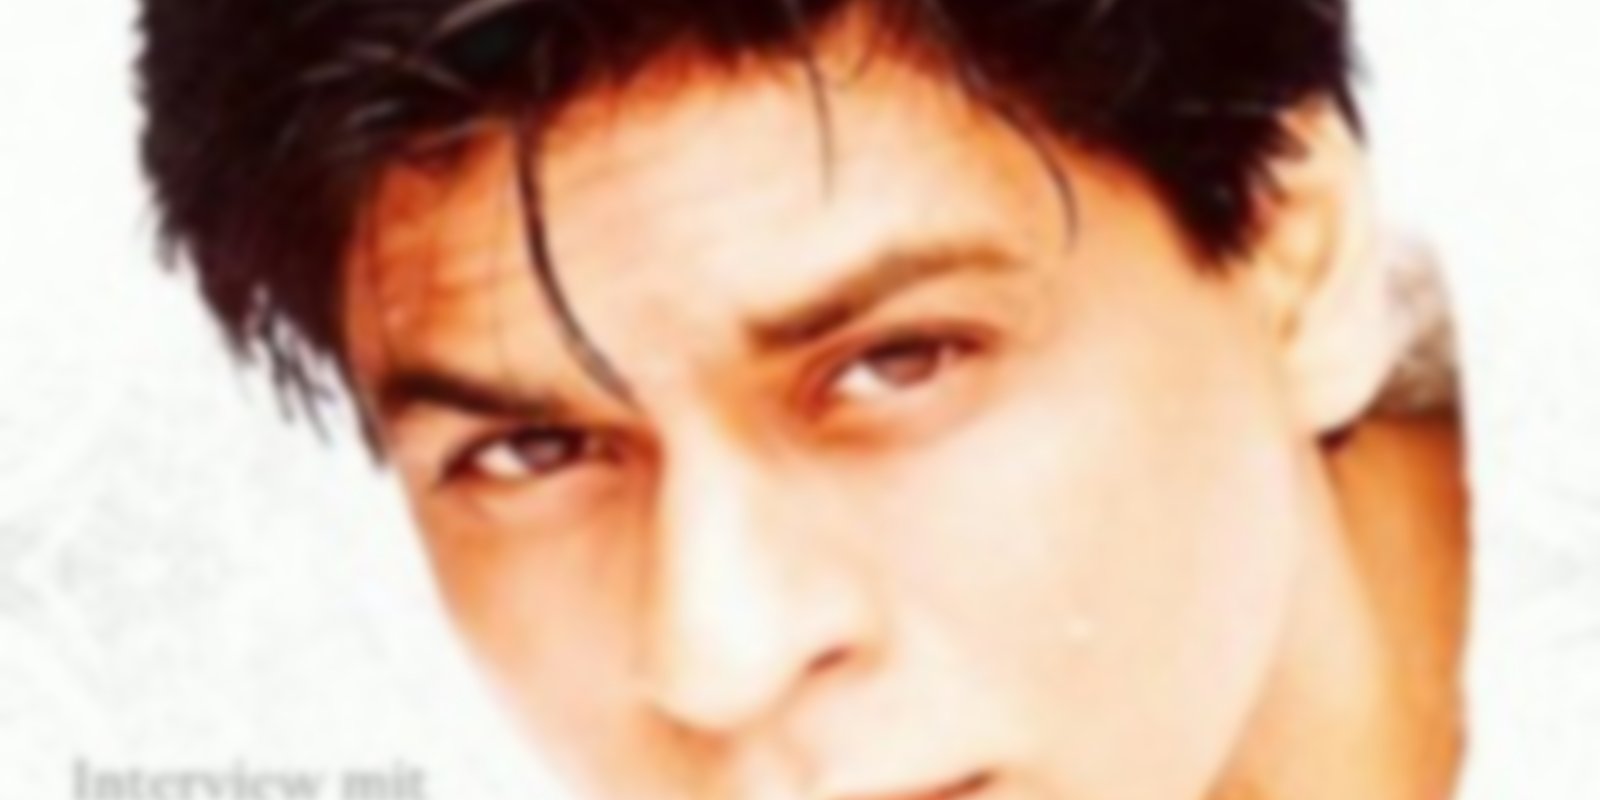 Shahrukh Khan - Das ist mein Leben